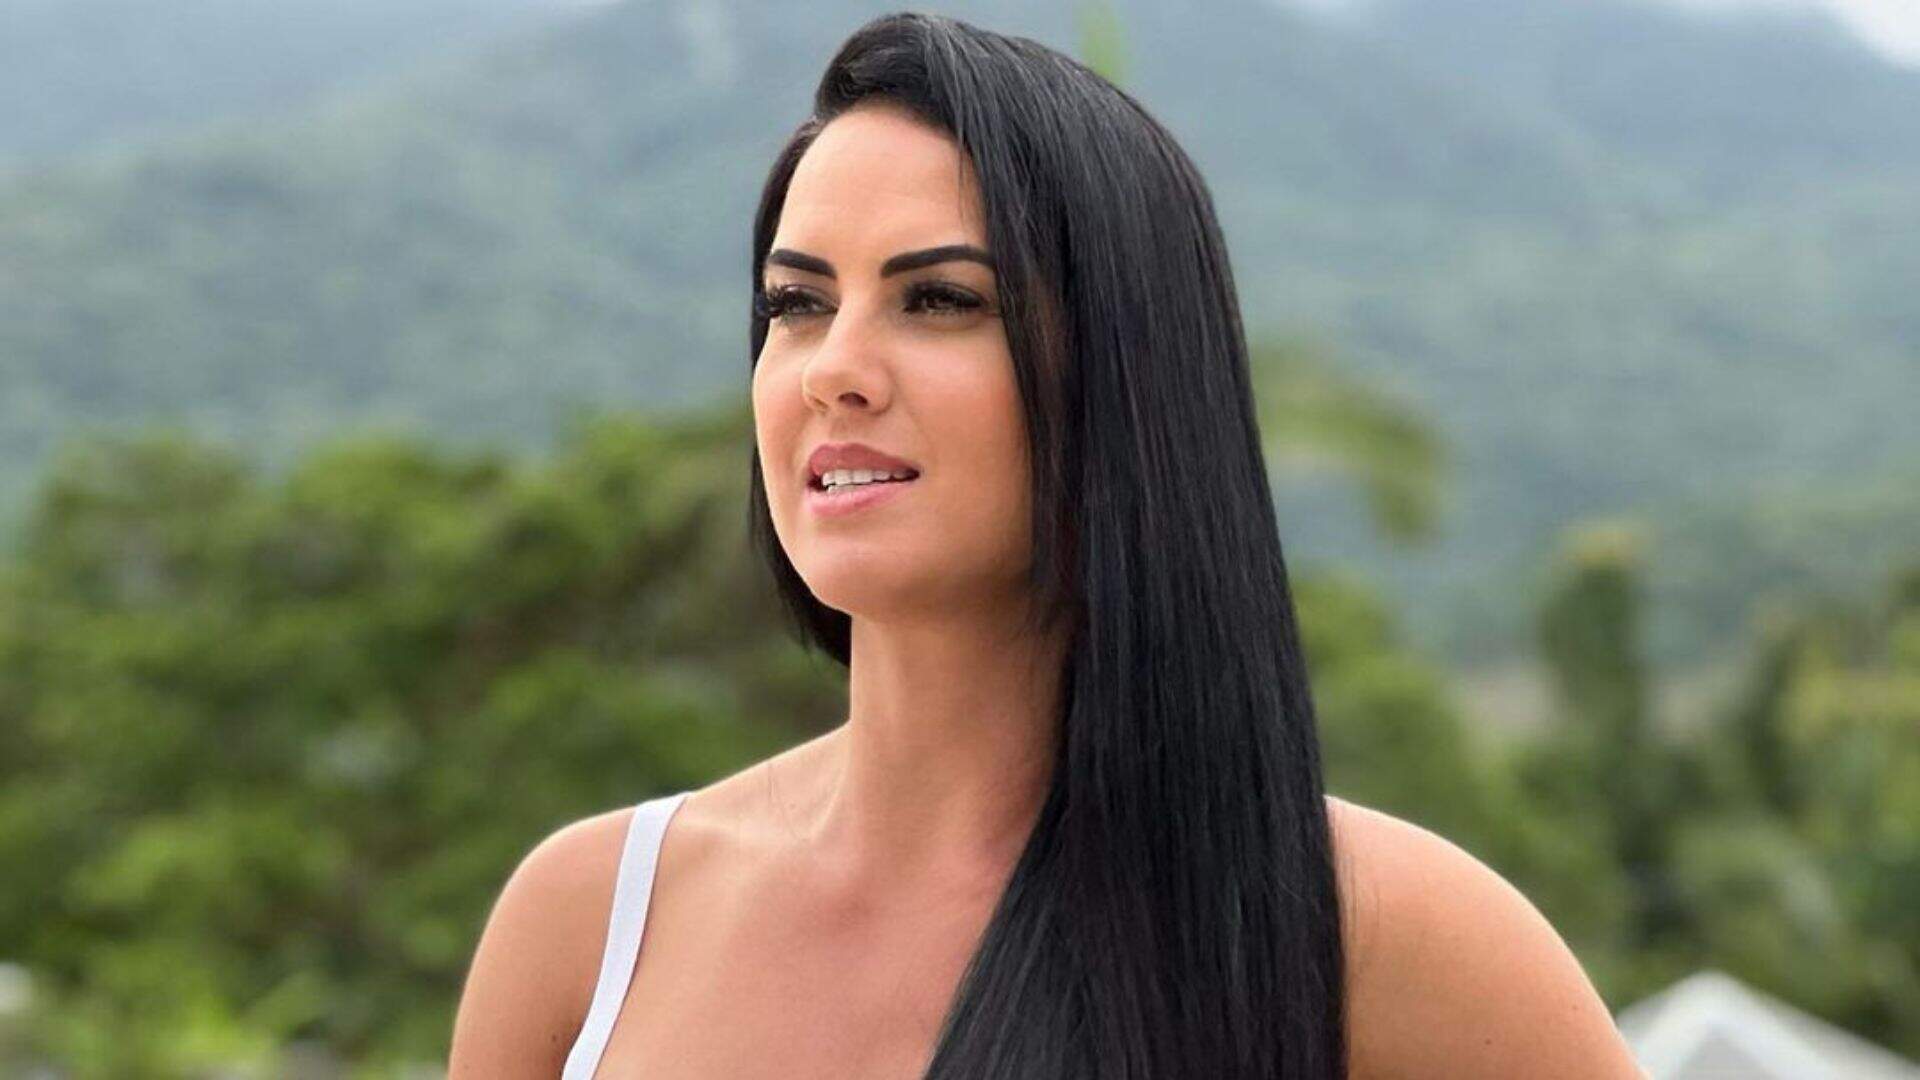 Graciele Lacerda revela seu biquíni de oncinha mais ousado no corpo: “Zezé adora” - Metropolitana FM